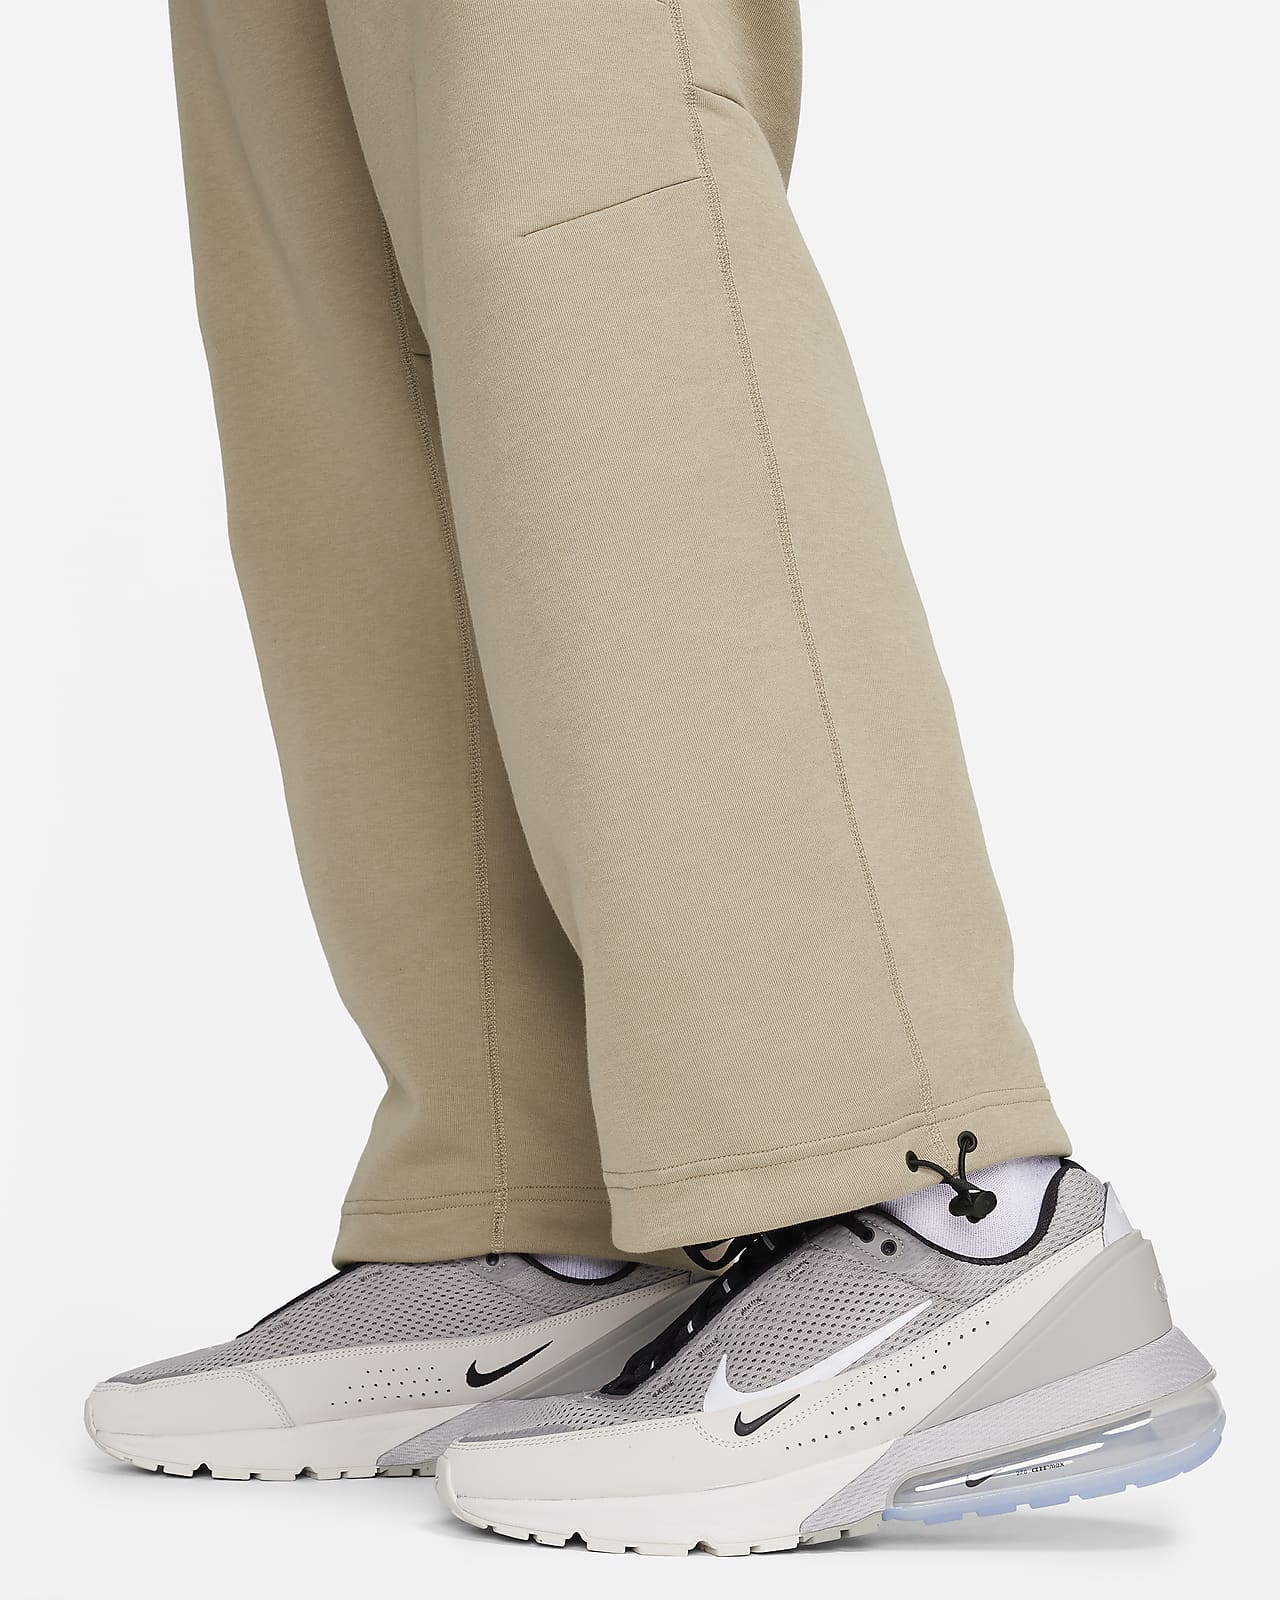 Nike Sportswear Tech Fleece Men's Open-Hem Tracksuit Bottoms. Nike LU